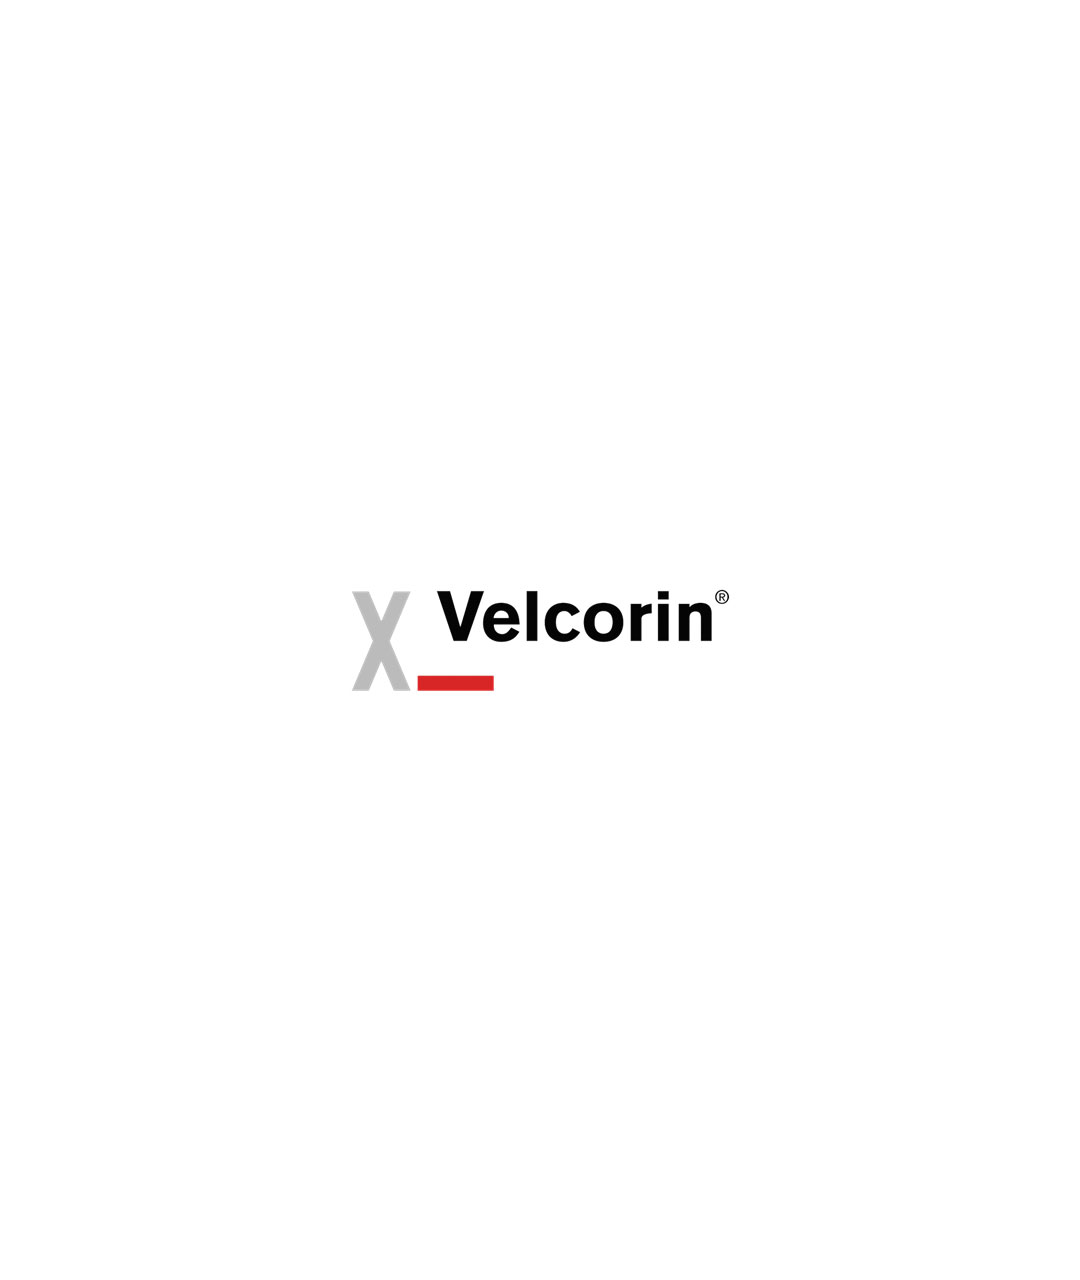 Velcorin